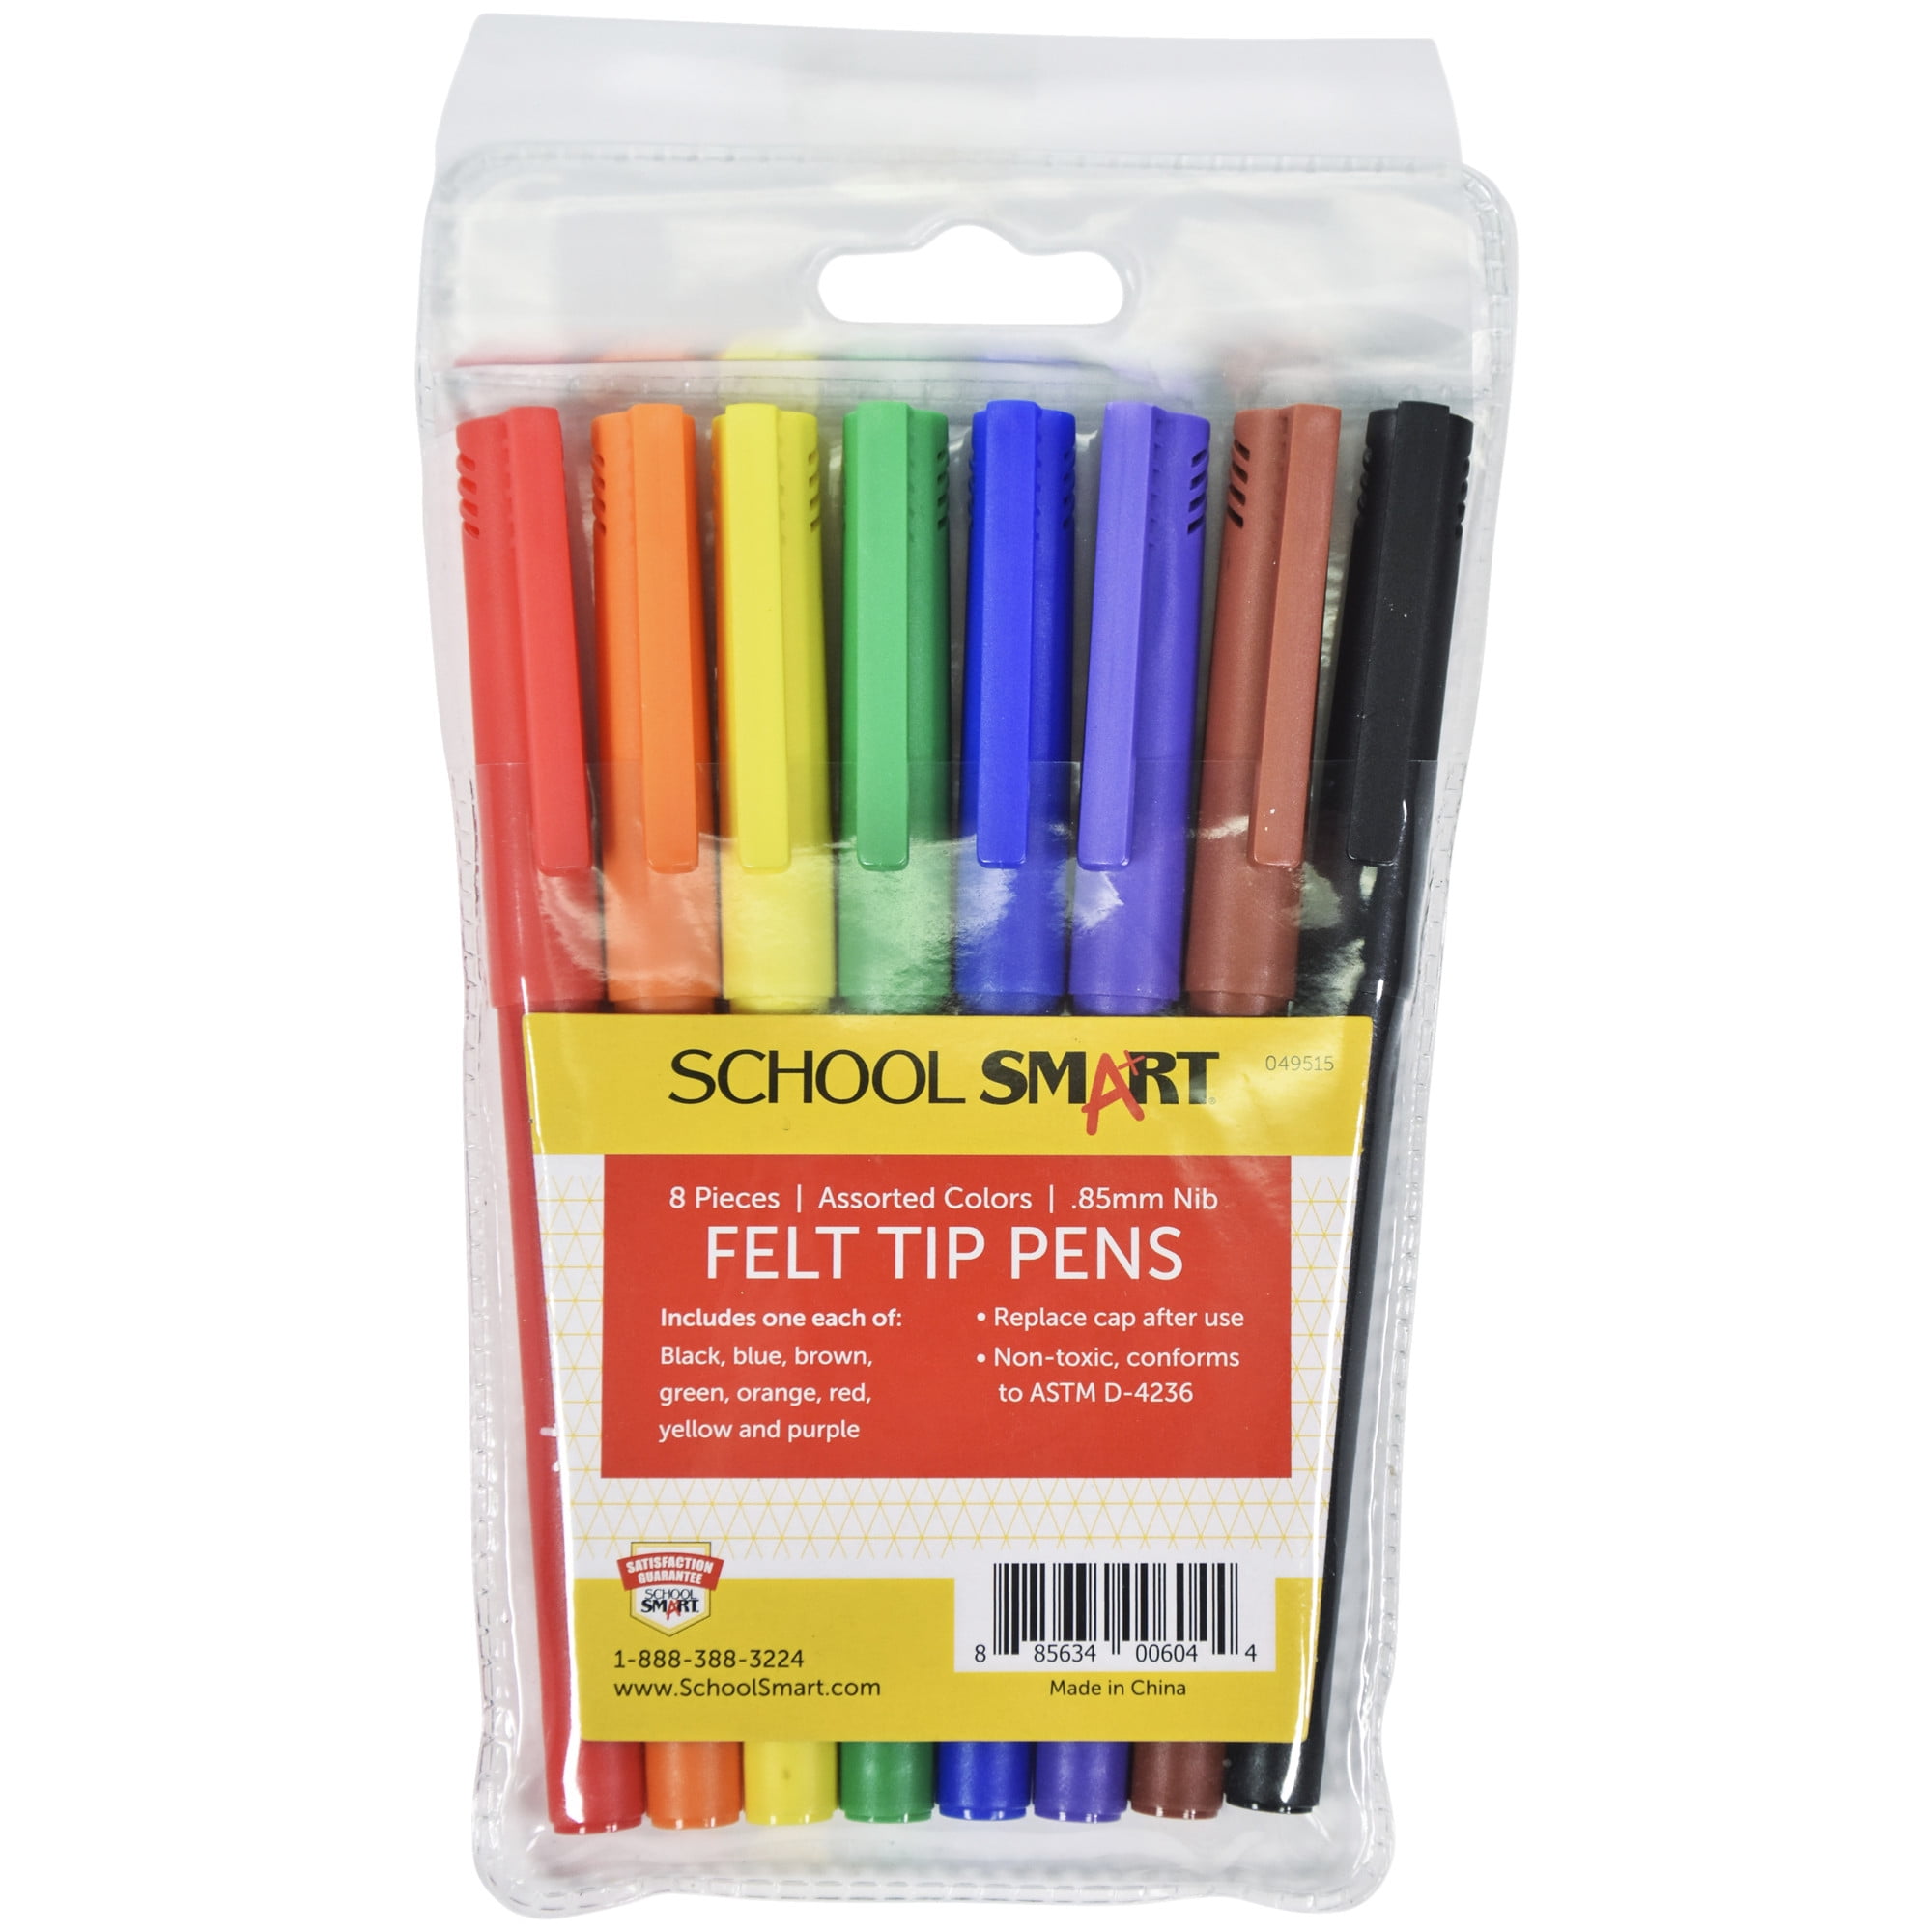 Mr. Pen- Felt Tip Pens, Pens Fine Point, Pack of 8, Vietnam